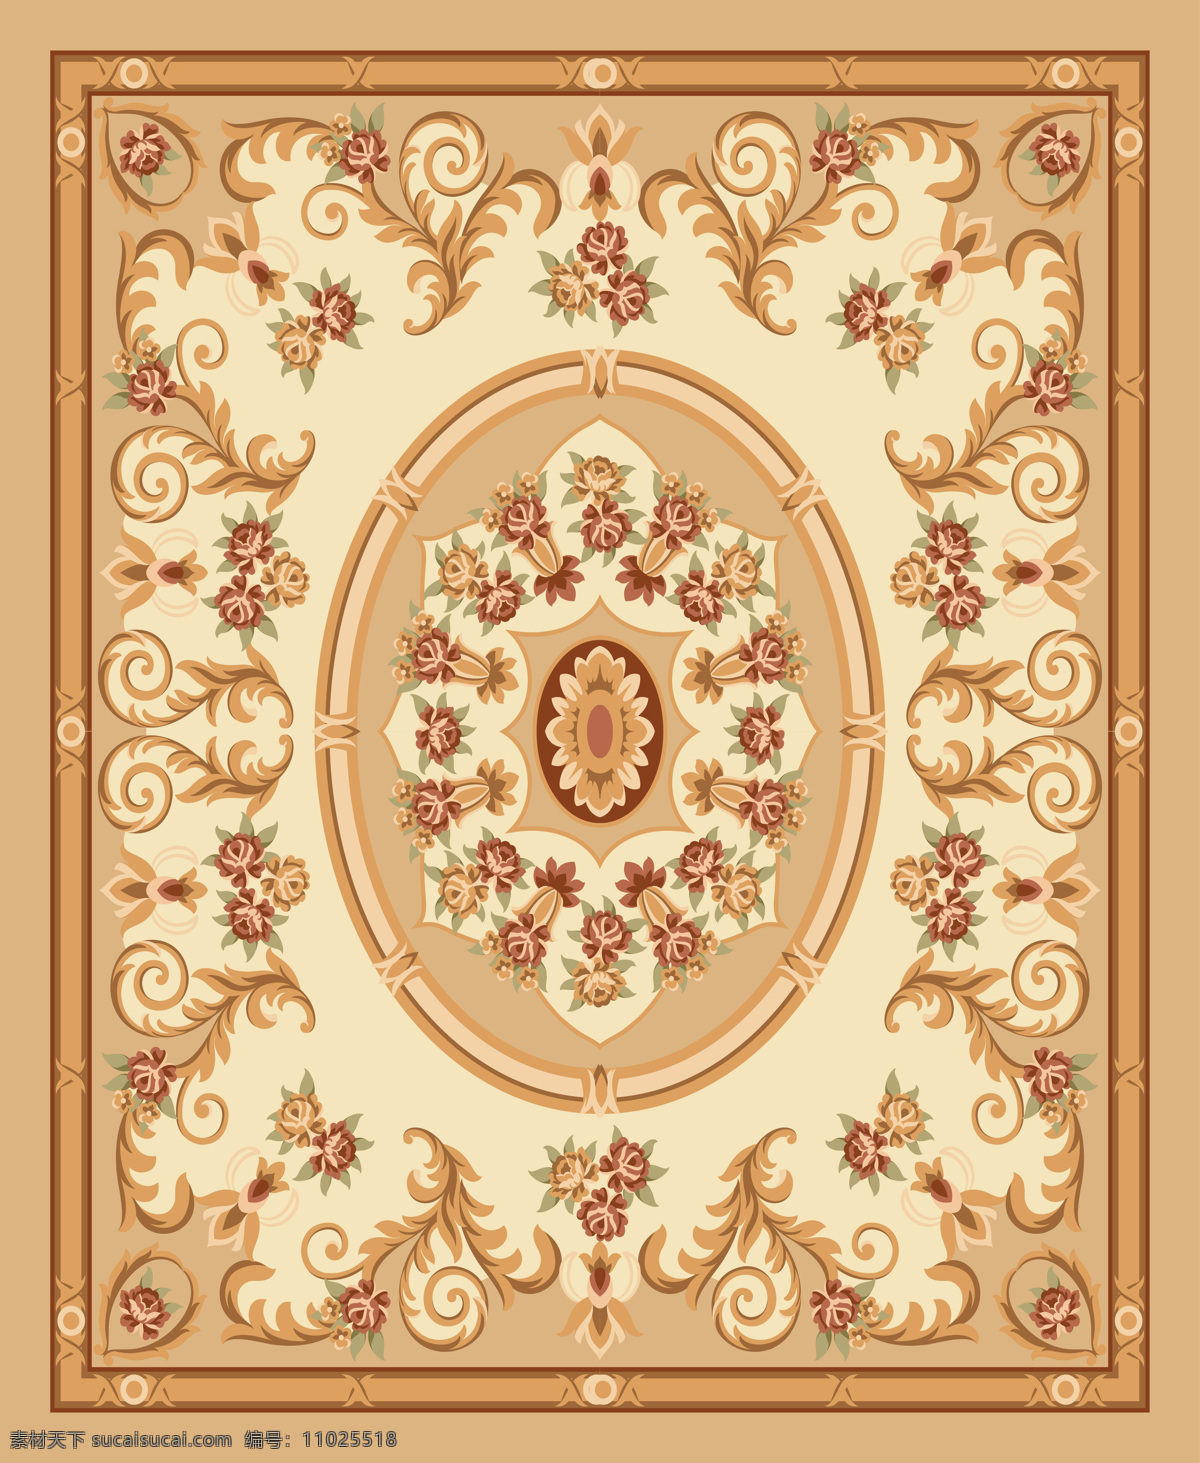 地毯设计 地毯图案 欧式传统图案 底纹 边花 花纹 玫瑰 地毯拼花 图案 花边花纹 底纹边框